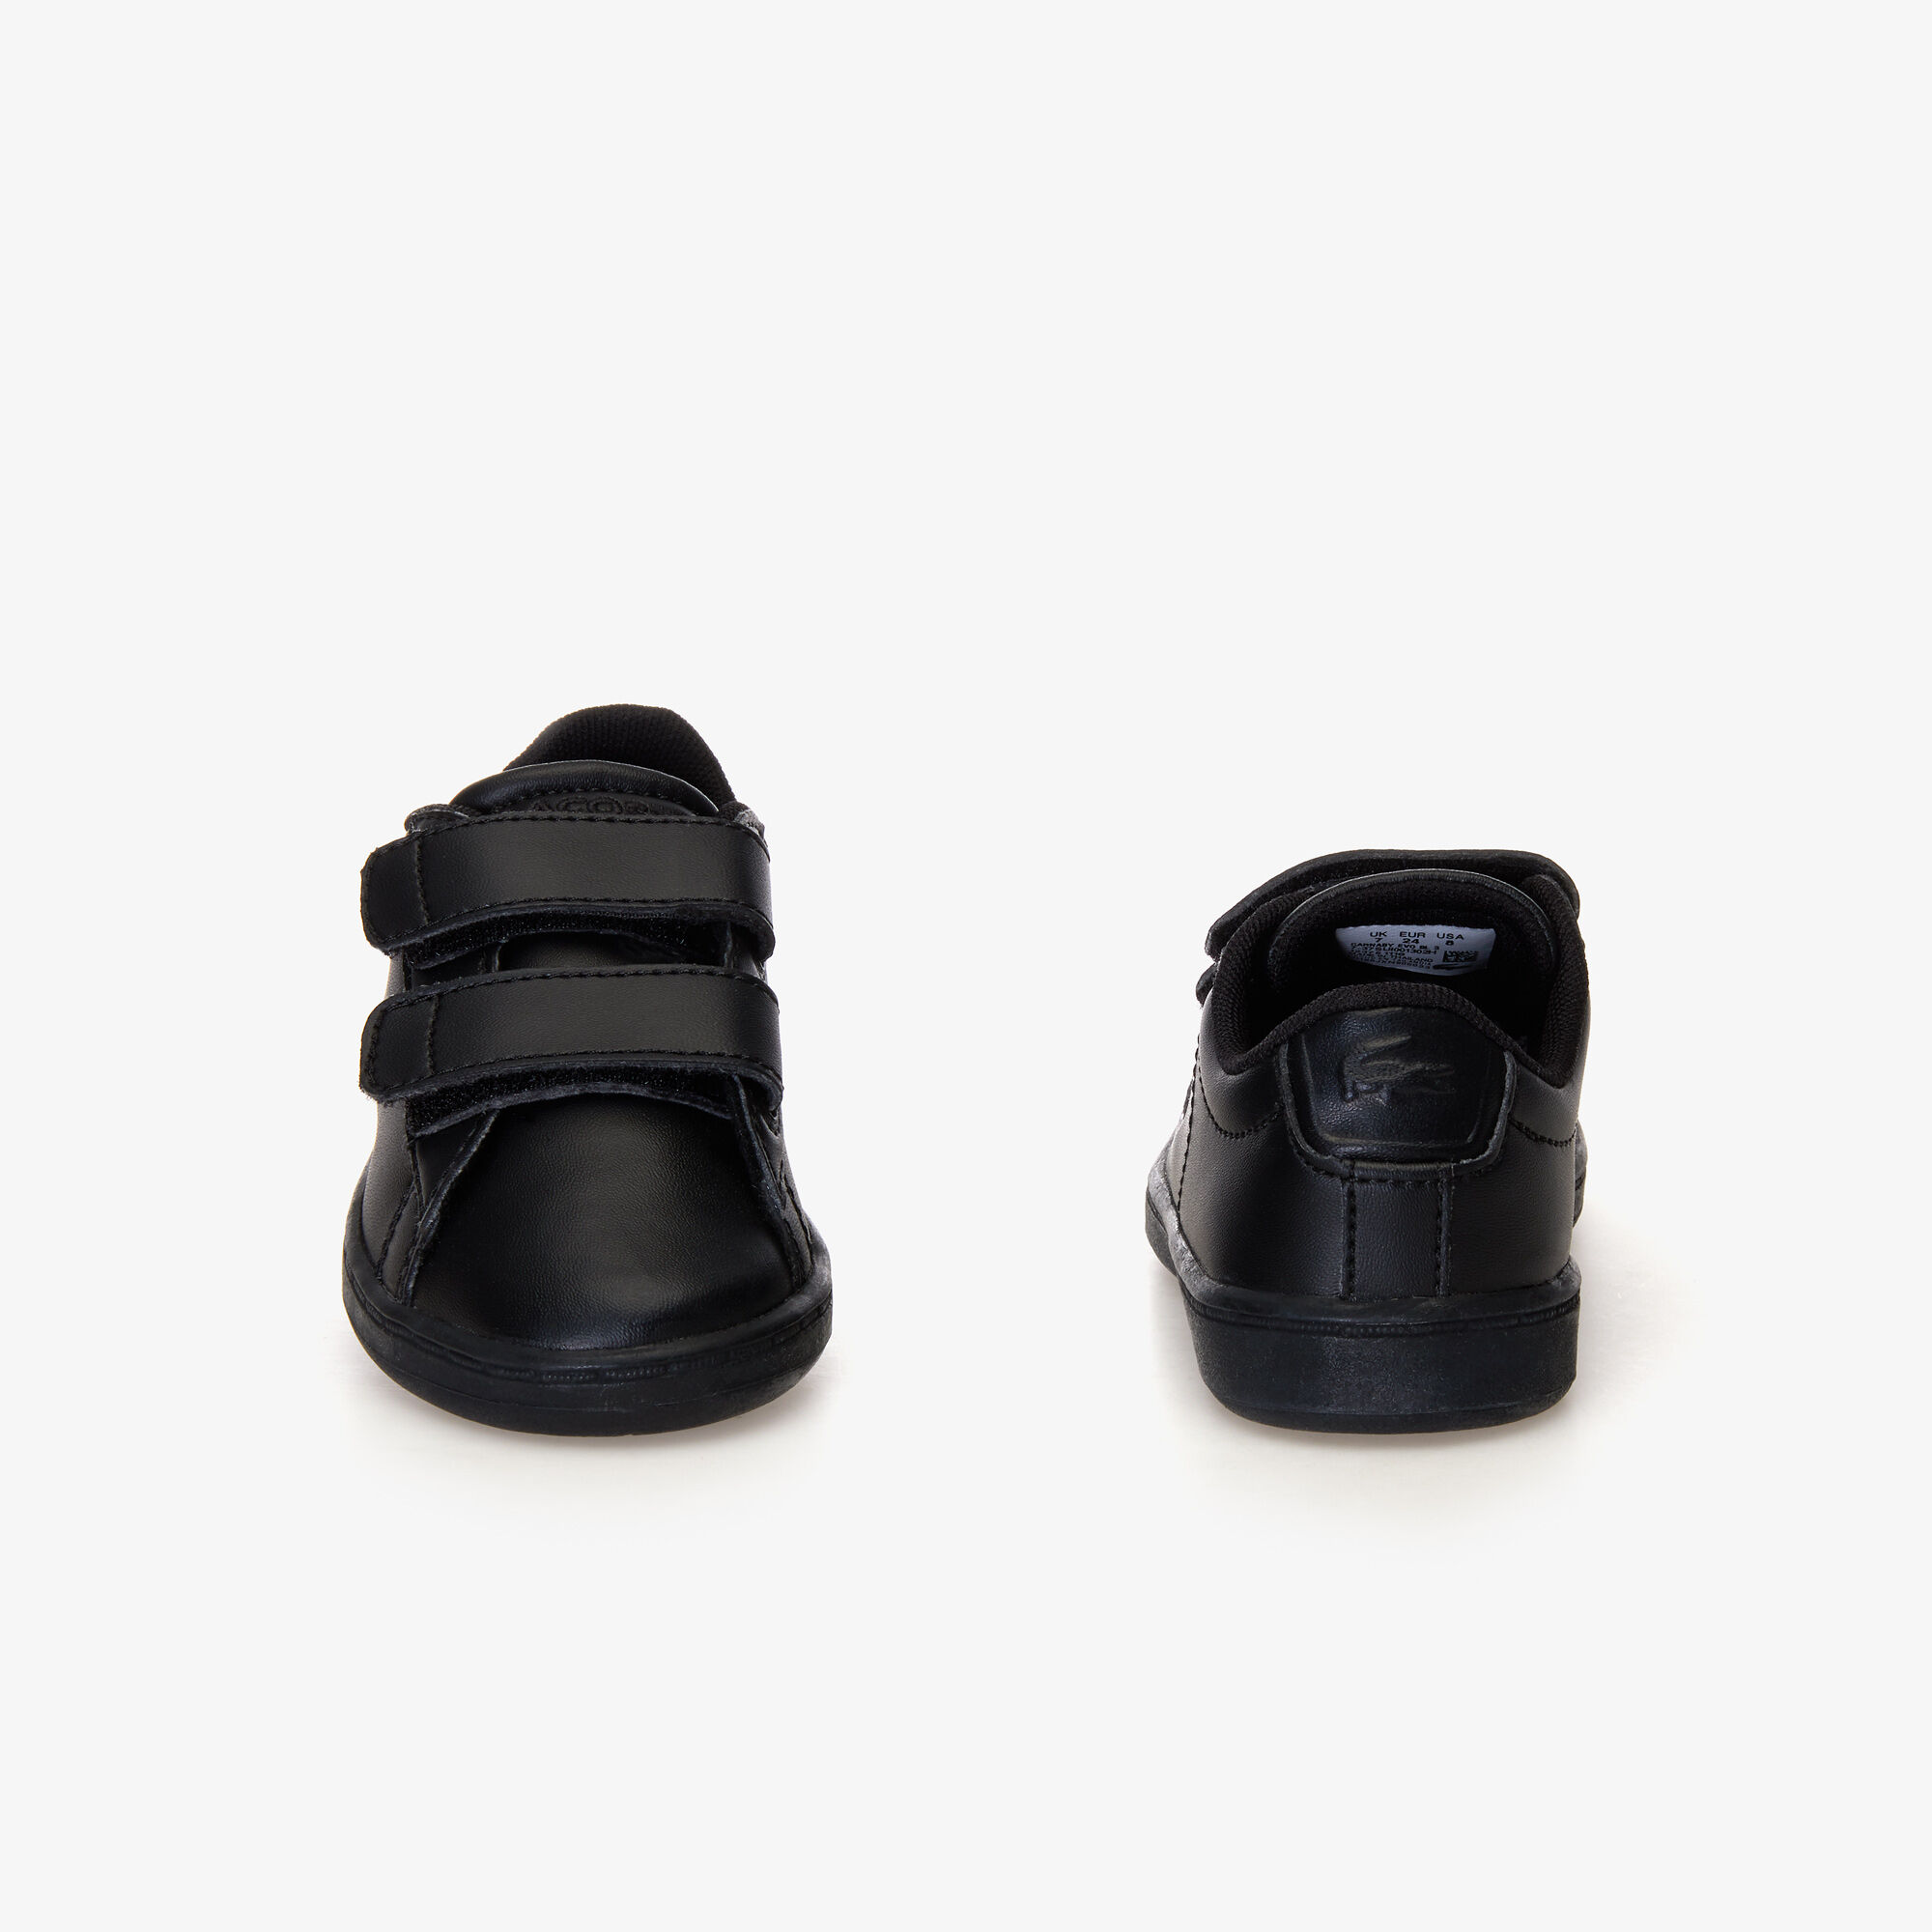 حذاء رياضي للأطفال من مواد اصطناعية وبطانة من النسيج الشبكي بلون متناغم من مجموعة Carnaby Evo